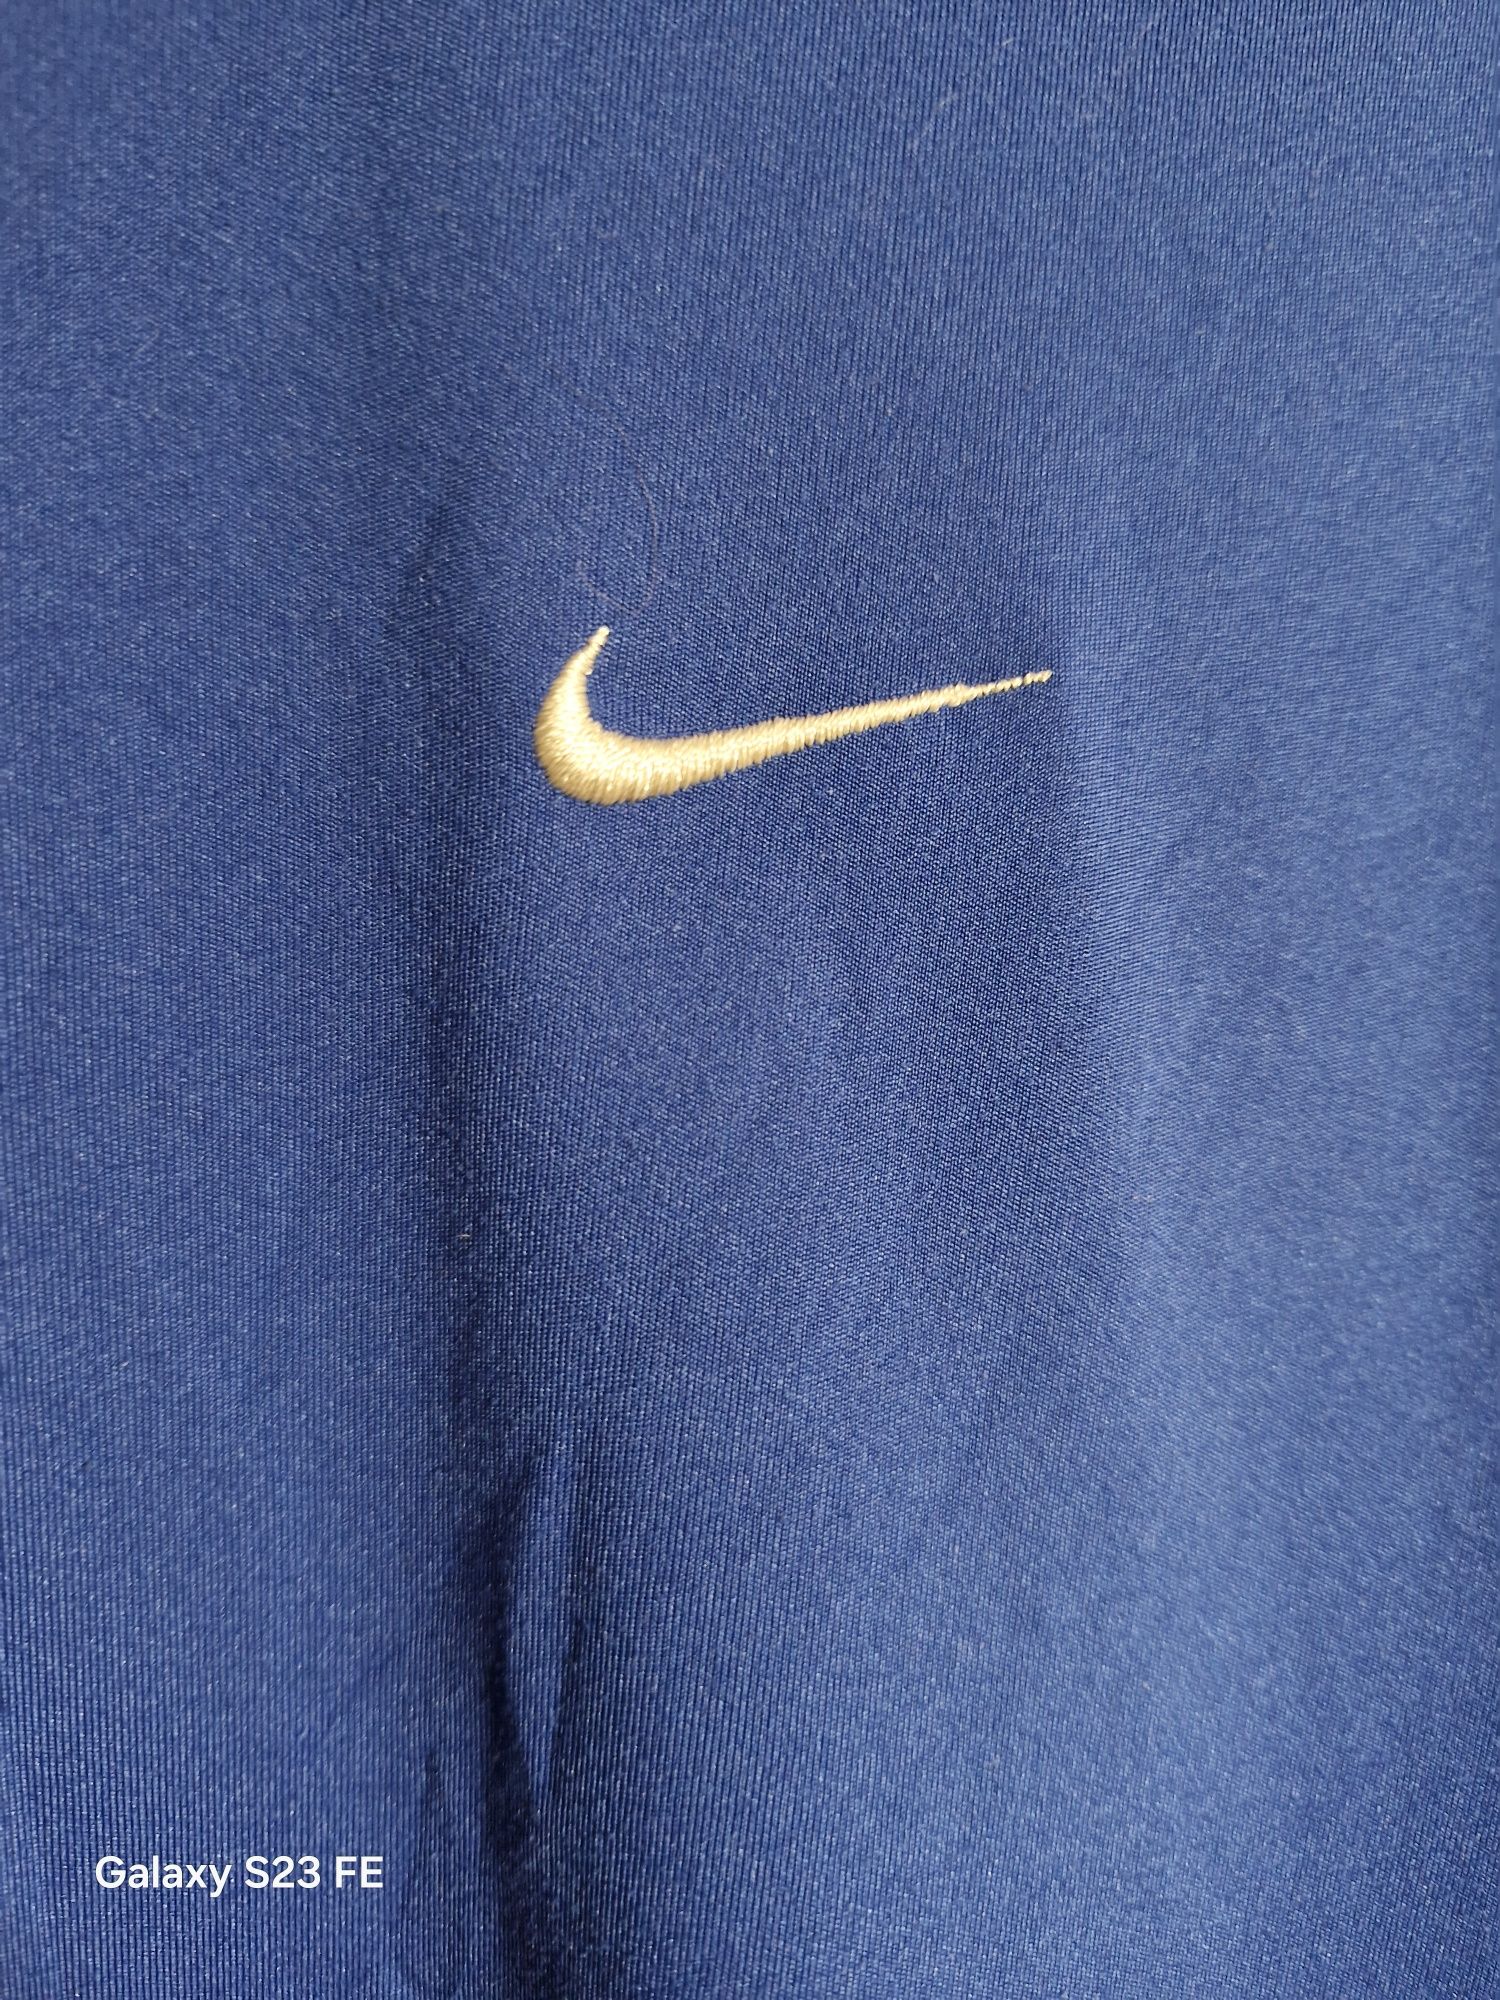 Koszulka męska Nike rozmiar S stan idealny